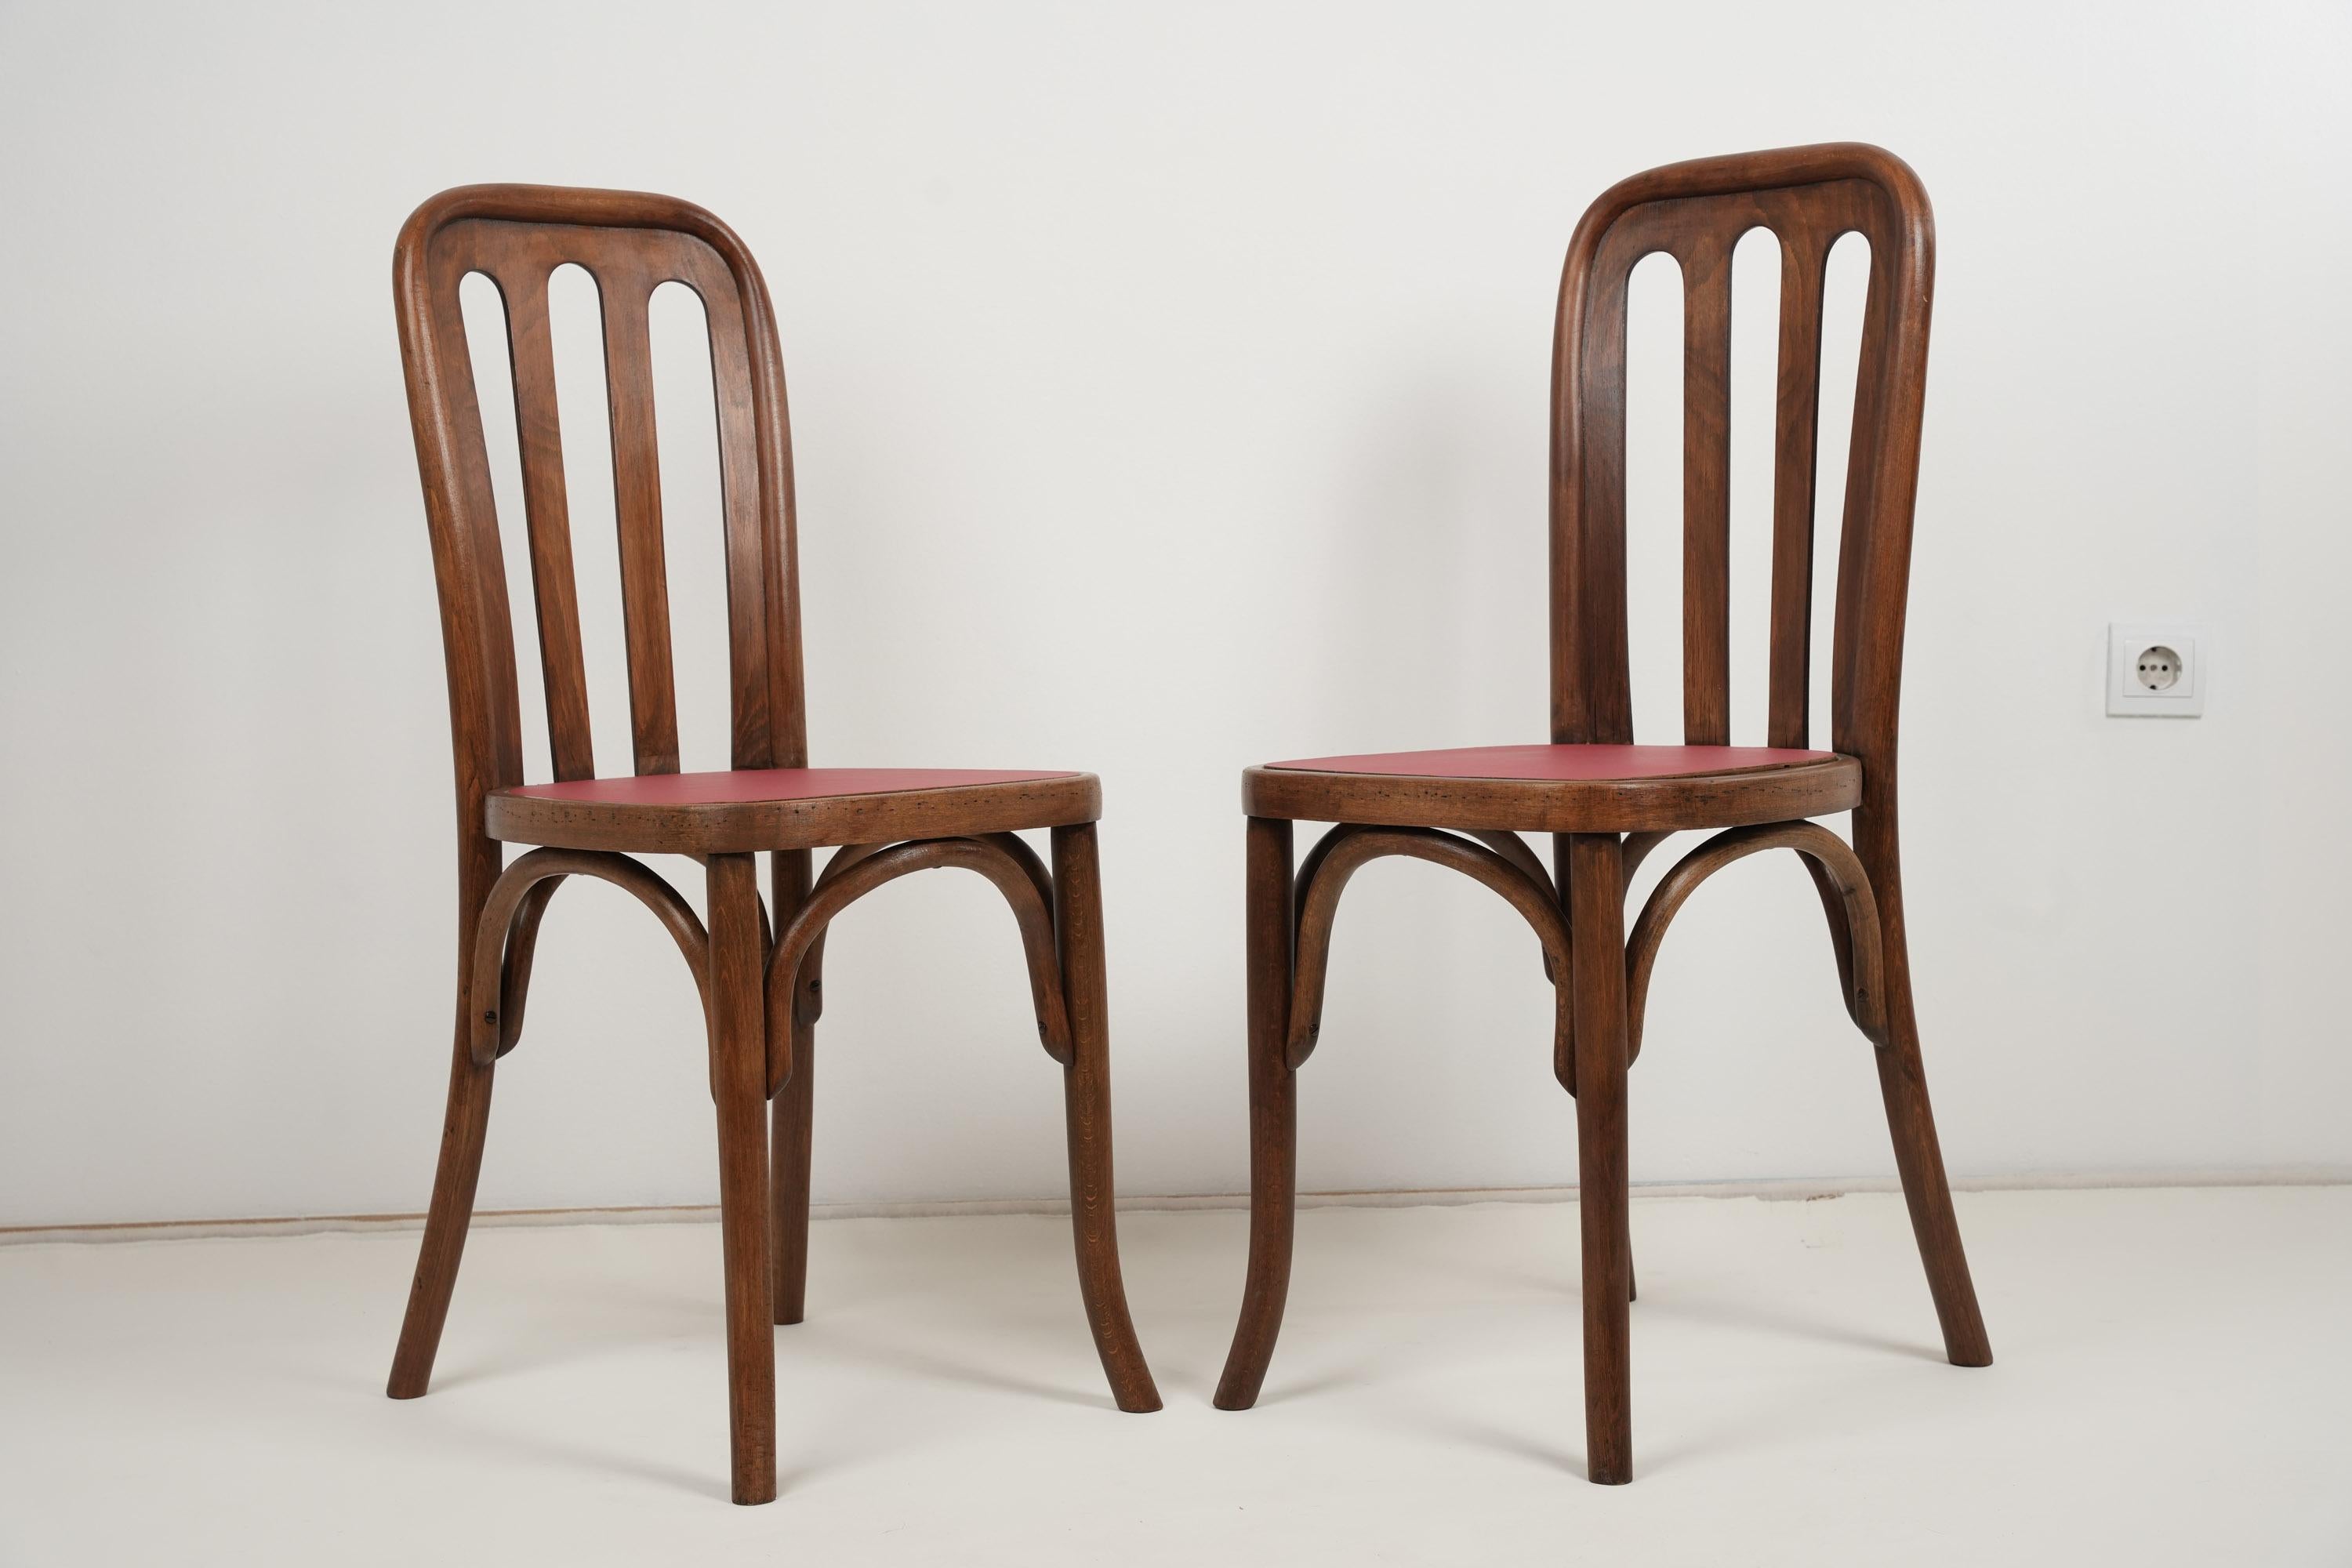 Josef Hoffmann Chairs 1905